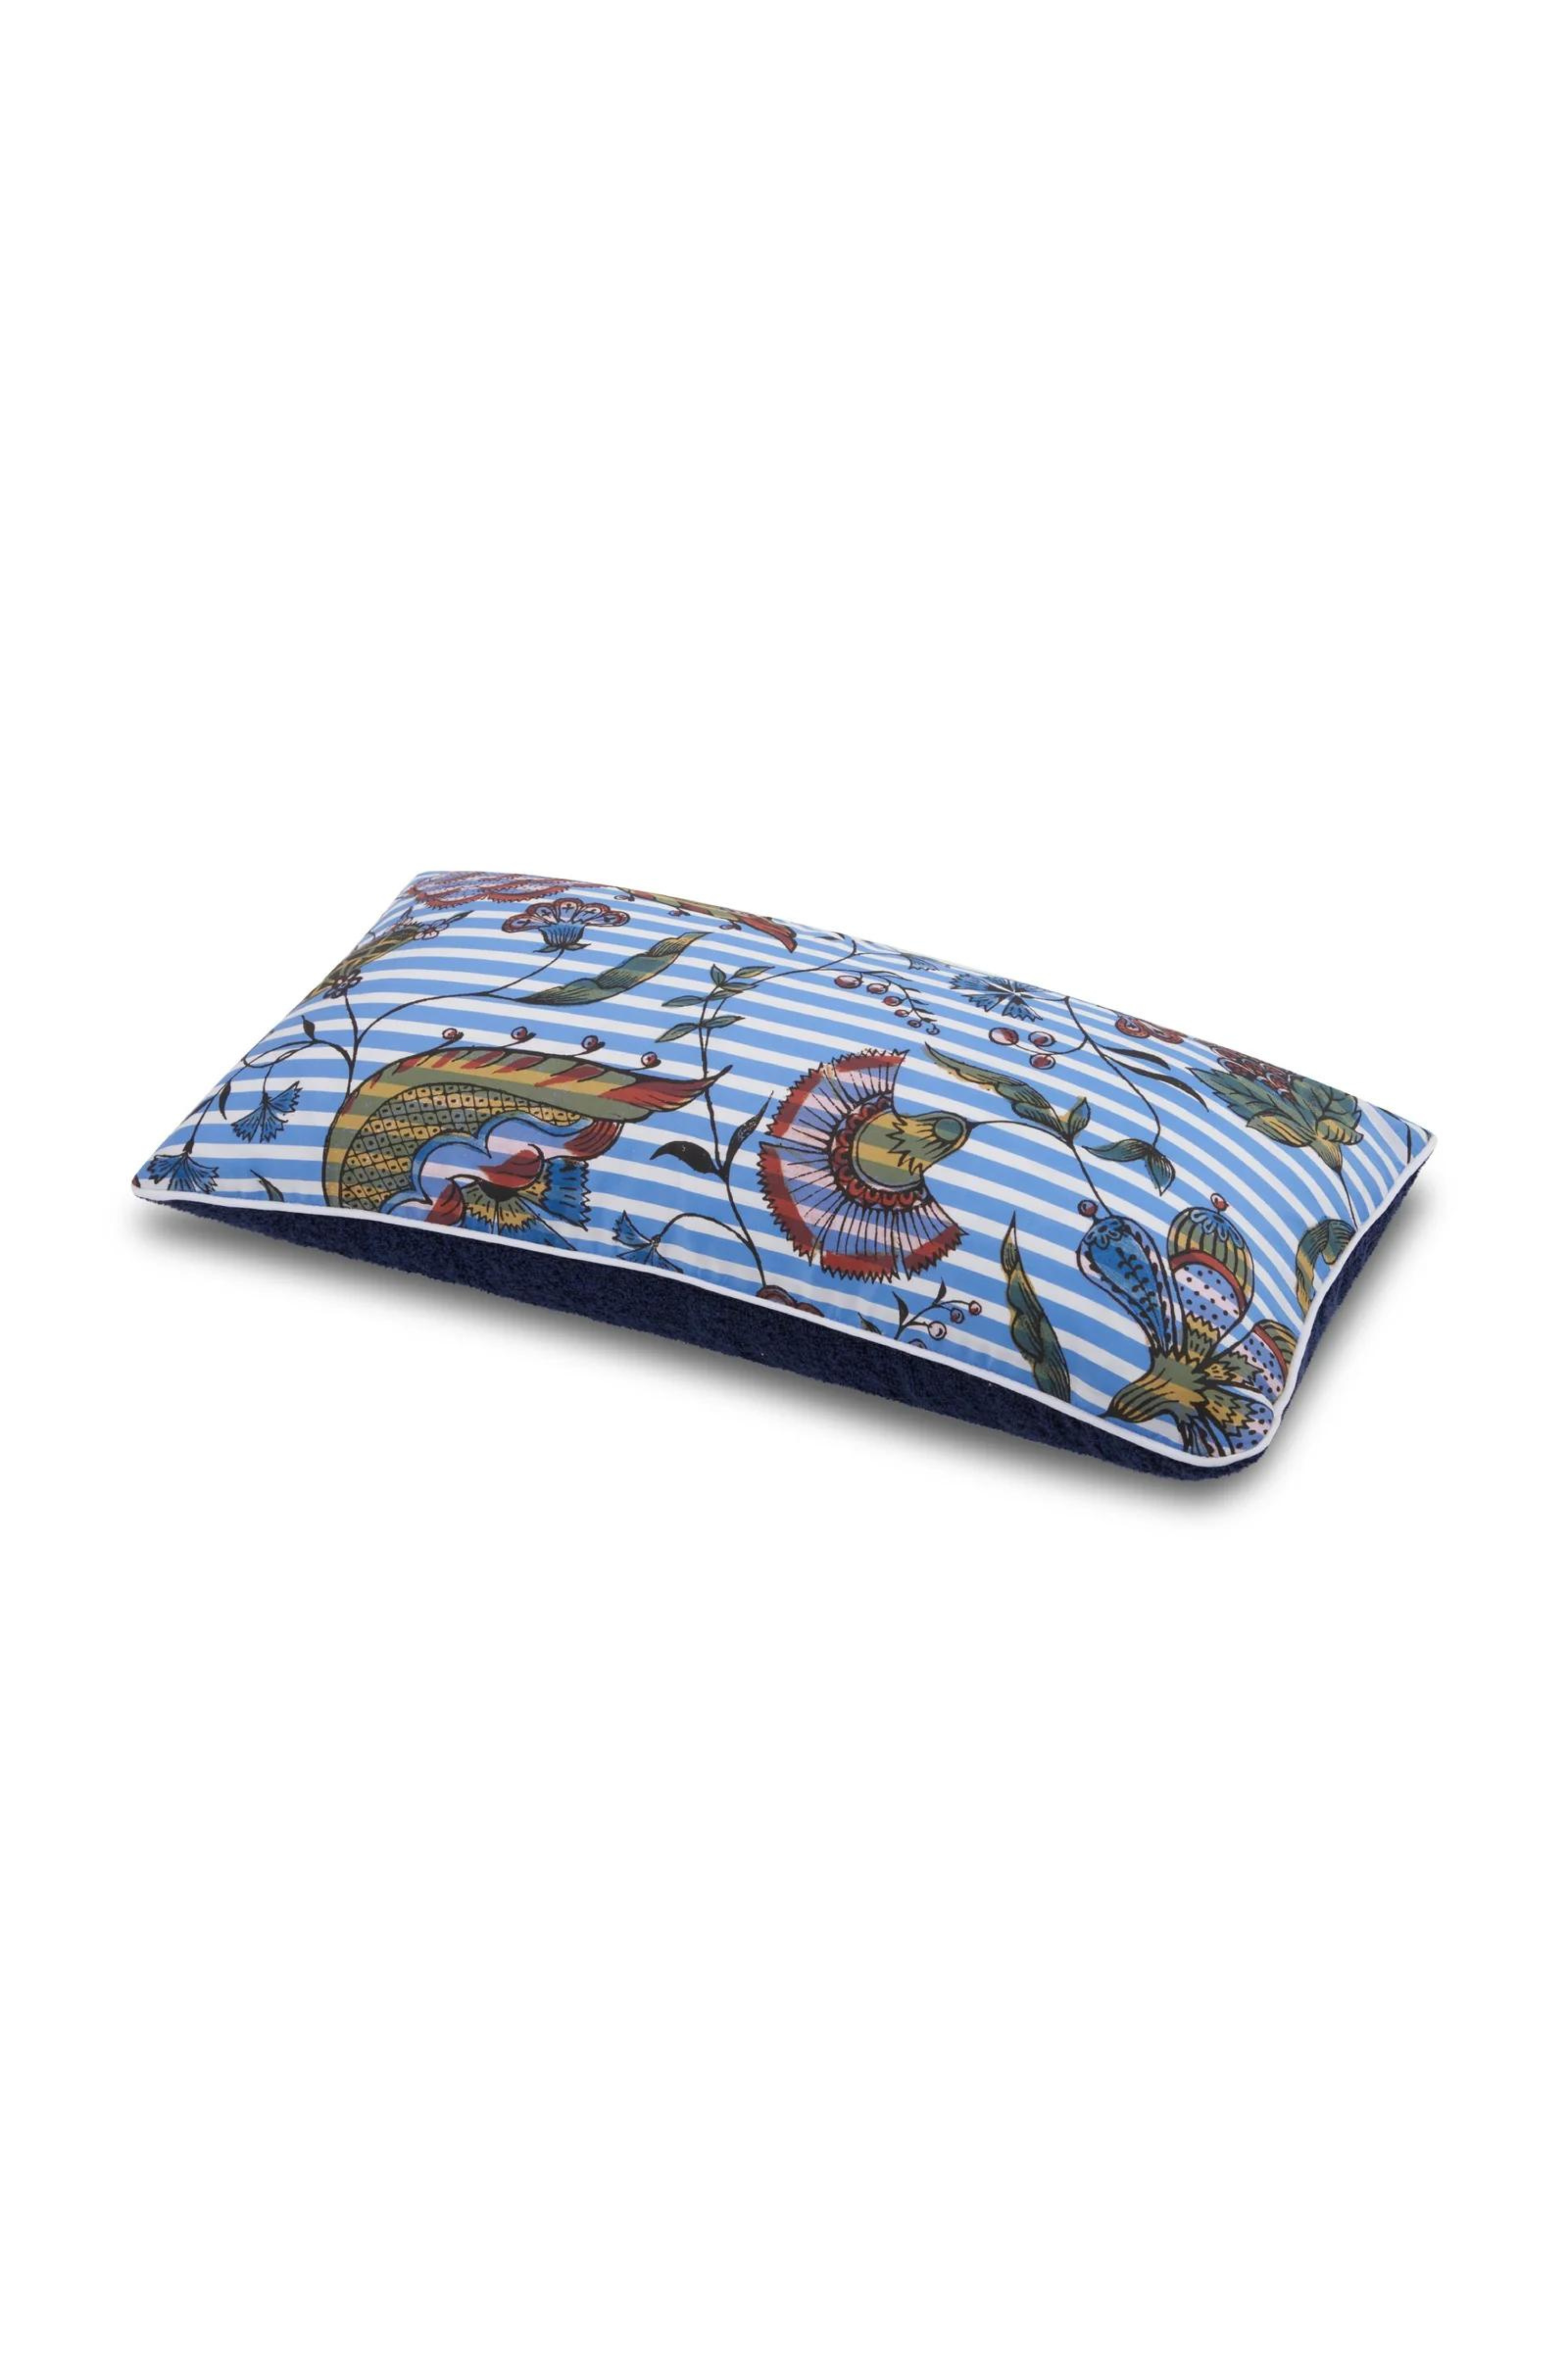 Camarat Striped Blue Antoinette Poisson Pillow